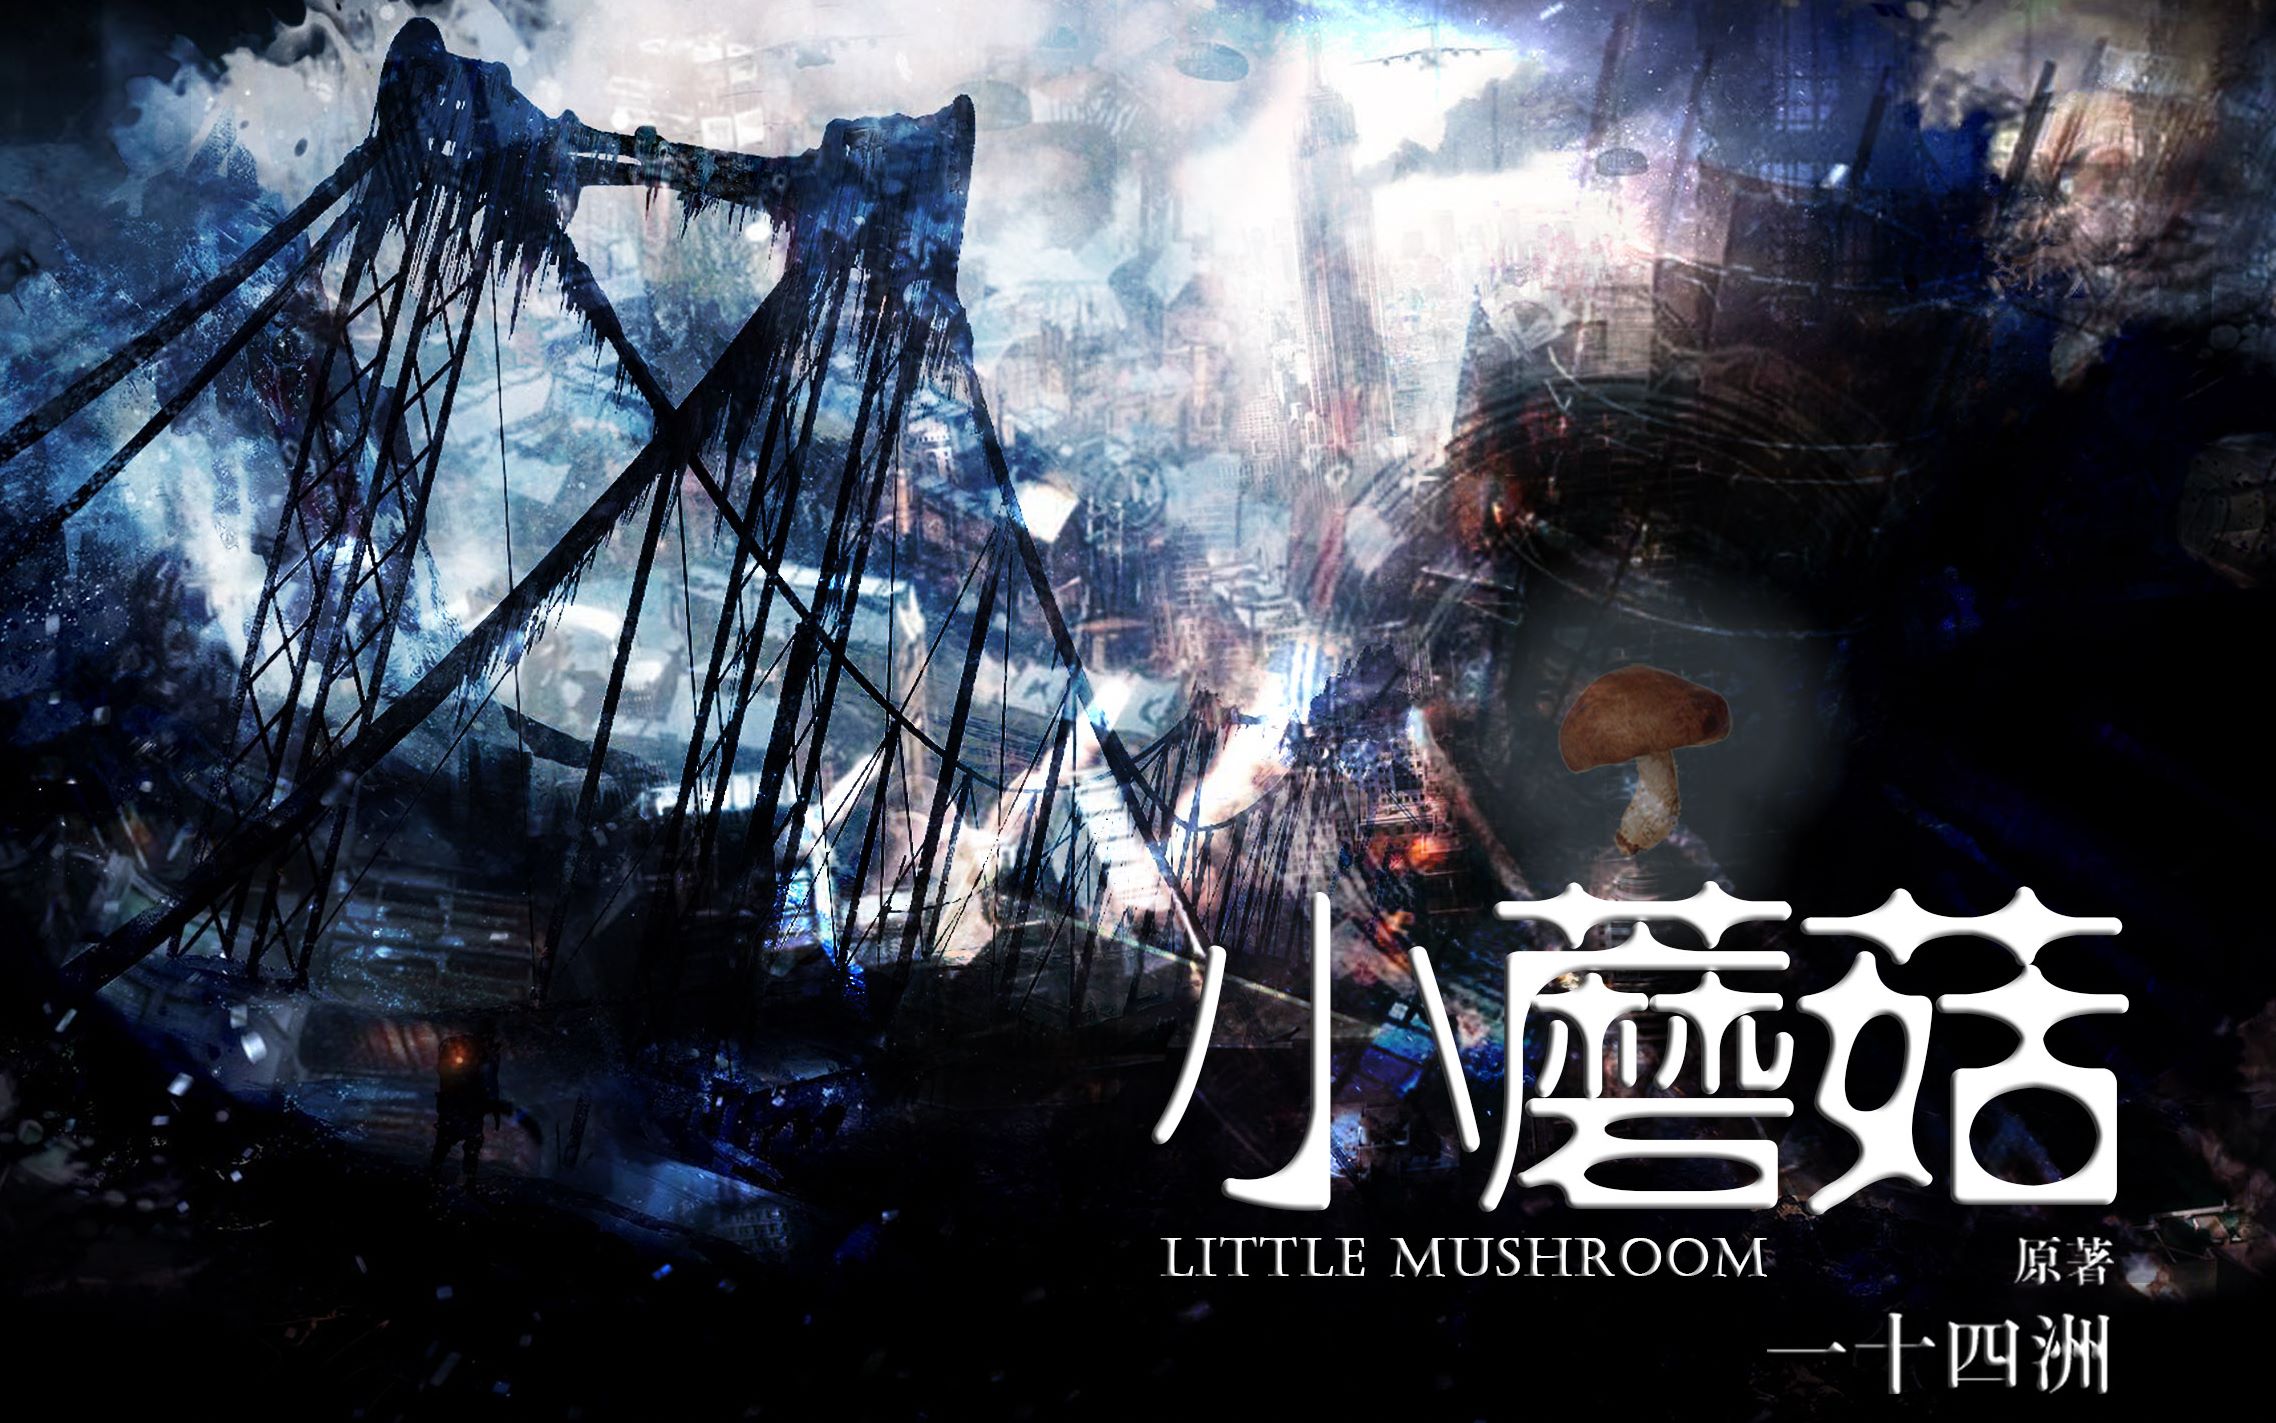 【纯爱小说】《小蘑菇》by 一十四洲 - 哔哩哔哩